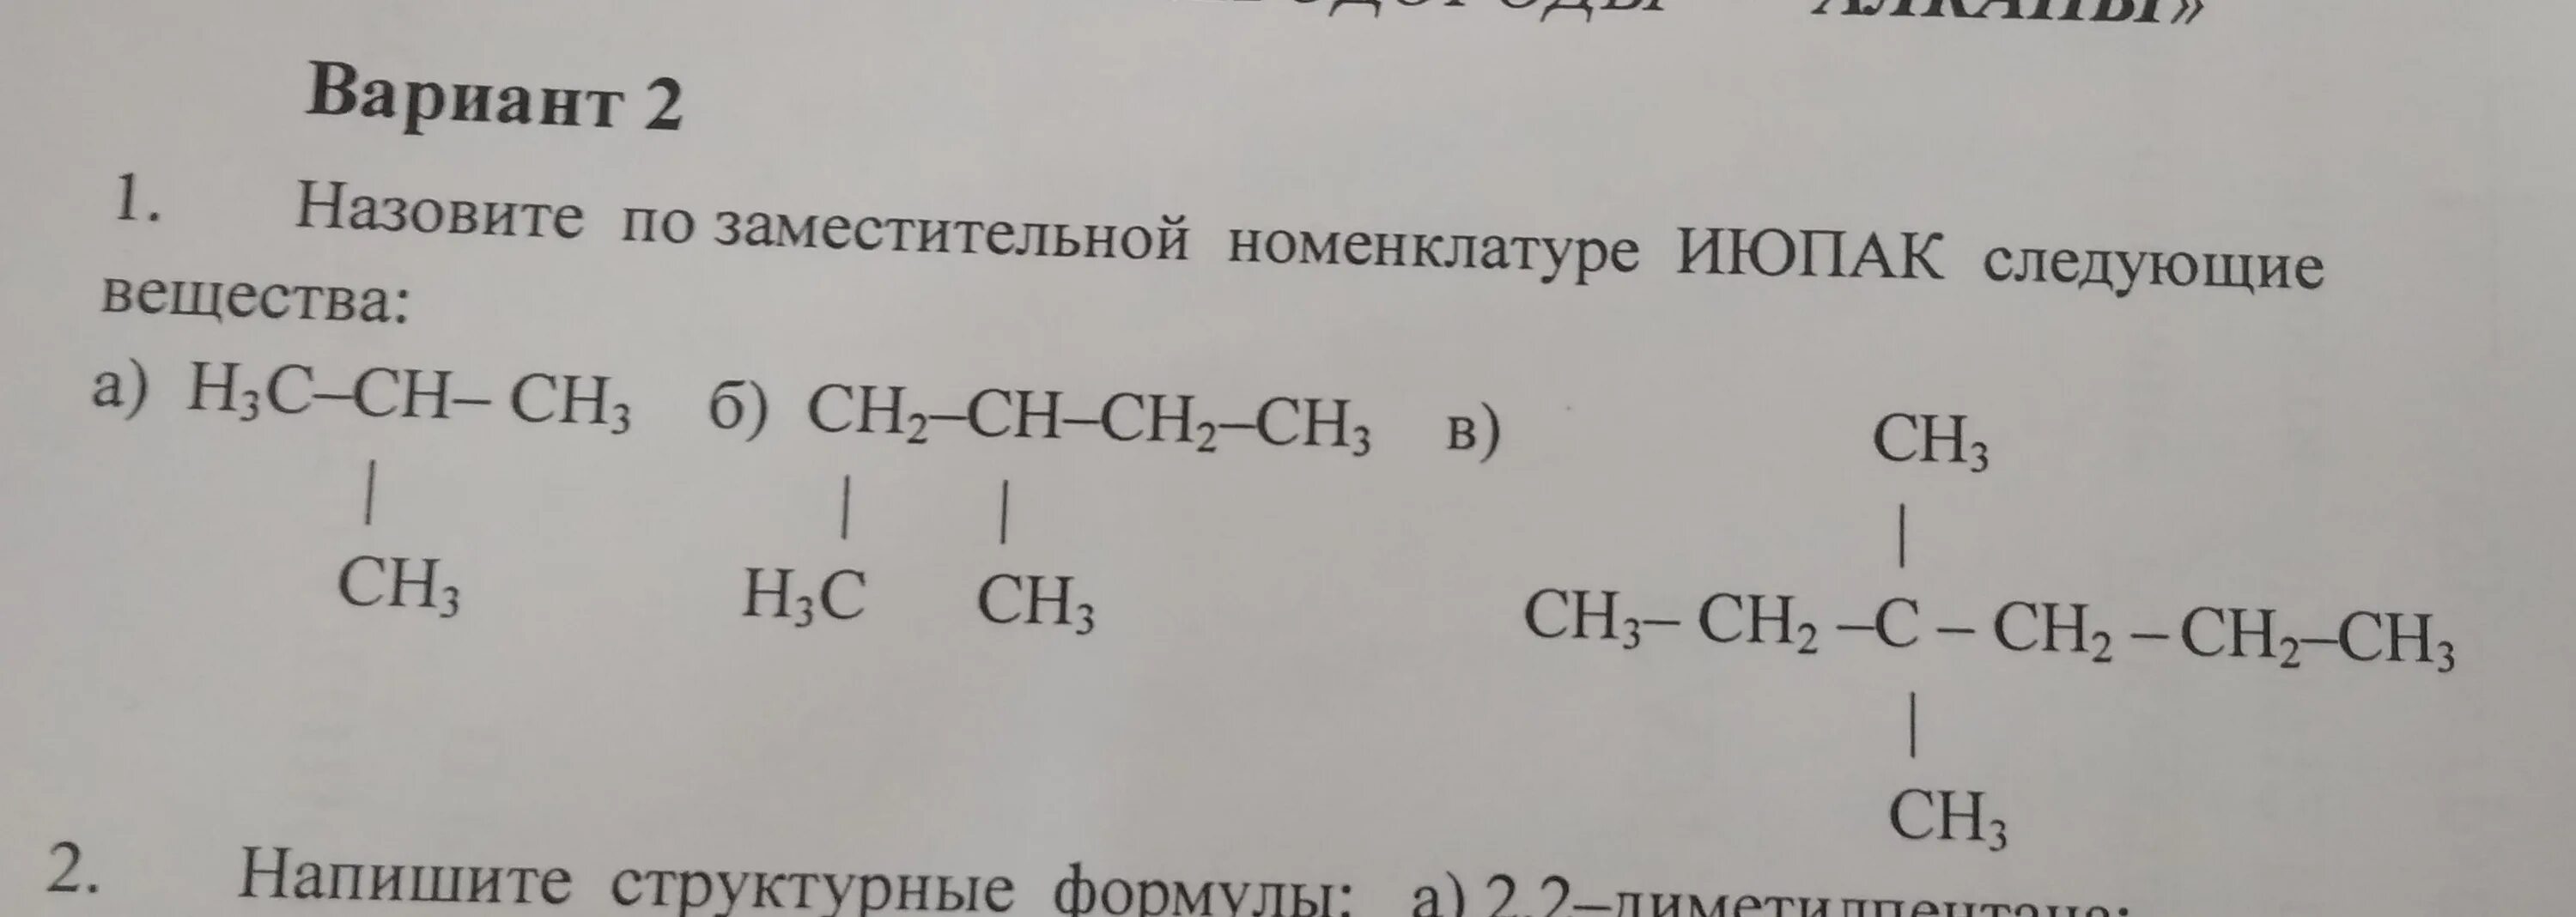 Ch ch определить класс. Назовите по номенклатуре IUPAC следующие вещества h3c-ch2-Ch-Ch-ch2-ch2ch3. Назовите соединения по заместительной номенклатуре. Назовите по номенклатуре ИЮПАК следующие вещества h3c-Ch-ch2-ch2-ch2-ch2-ch3. Ch c-ch2-ch3 по номенклатуре ИЮПАК.